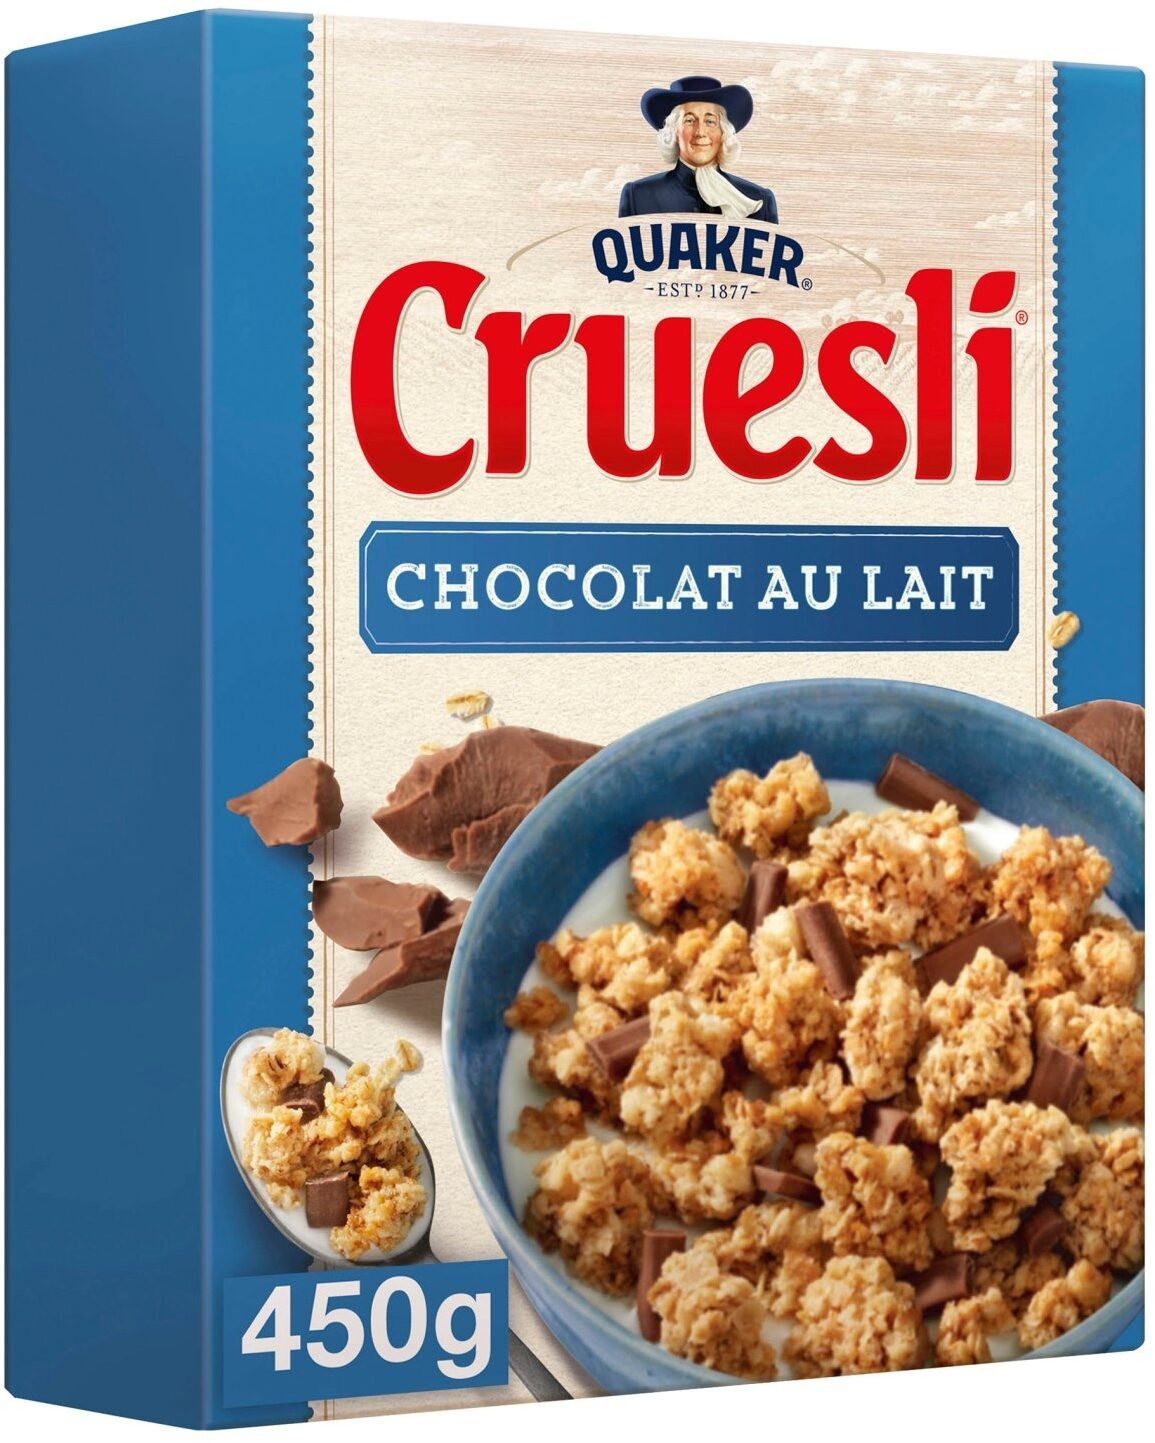 Quaker Cruesli Chocolat au lait - Produit